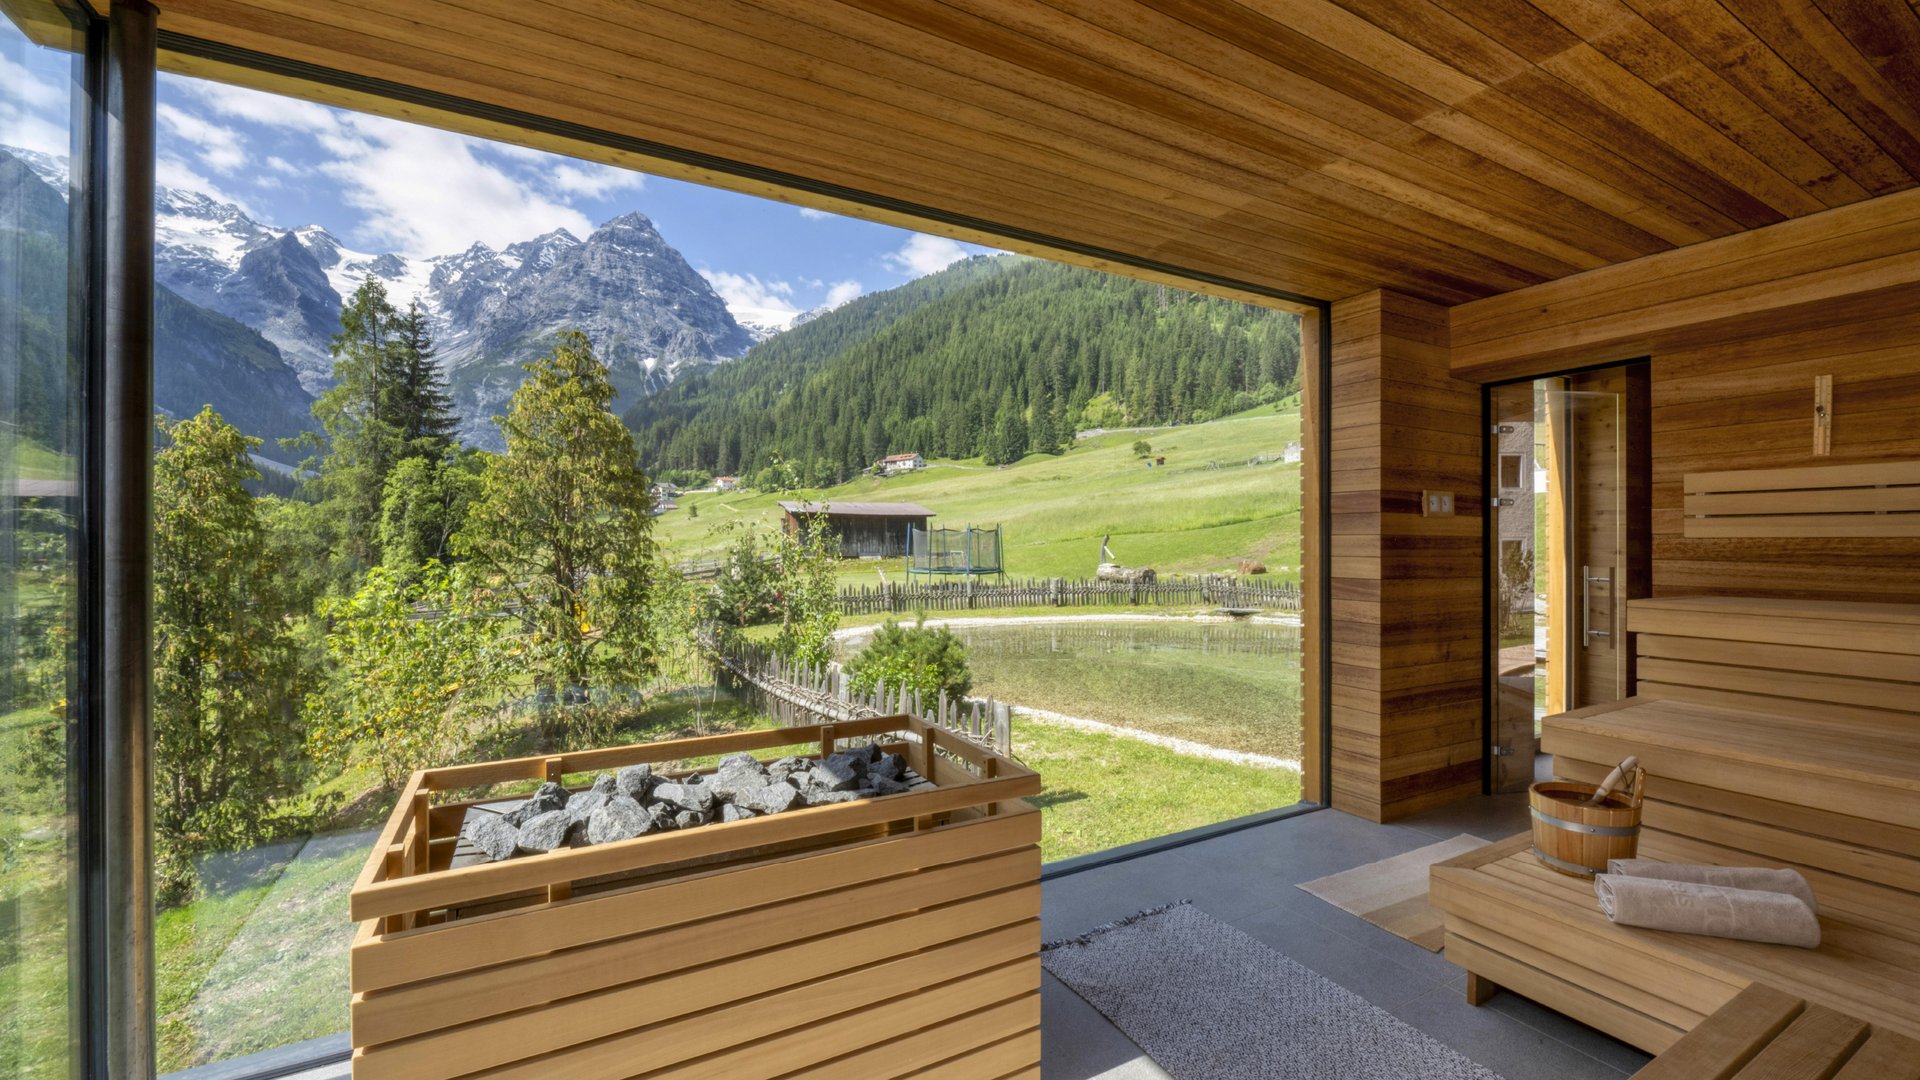 Sommerliche Saunaerfahrung im Hotel Bella Vista mit Panoramablick auf die grüne Alpenlandschaft und das klare Himmelspanorama.